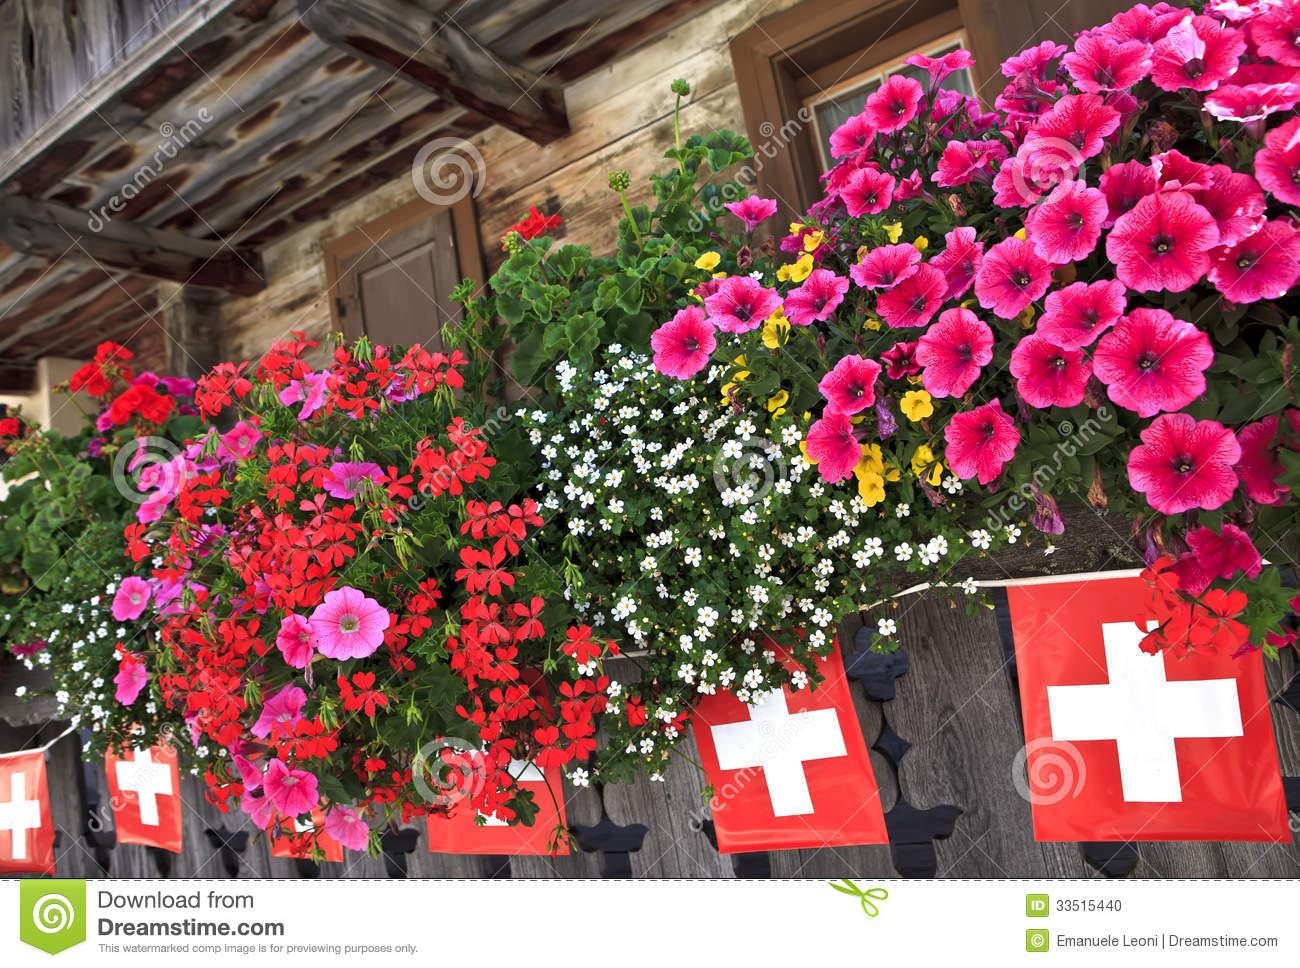 balcon-et-drapeaux-sur-le-chalet-dans-les-alpes-suisses-33515440.jpg